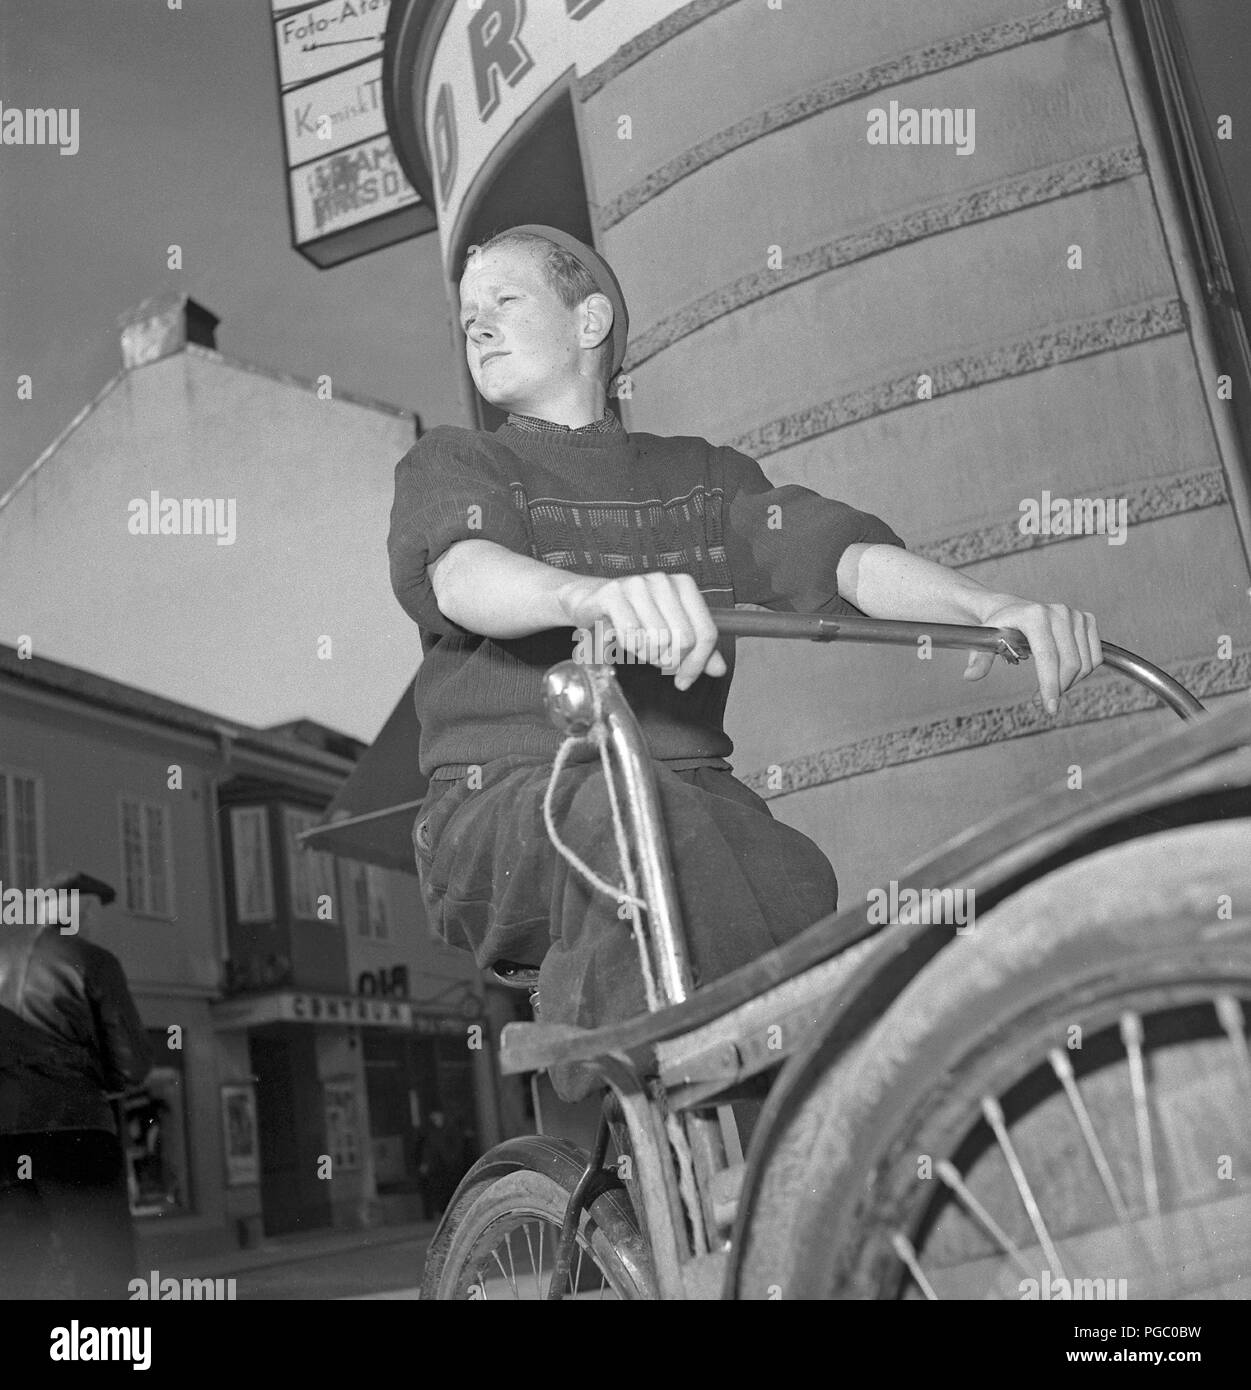 1940 garçon de course. Un jeune garçon sur son vélo avec une plate-forme en face de mettre de colis et de paquets à livrer. Suède 1946. Kristoffersson Photo T41-1 Banque D'Images